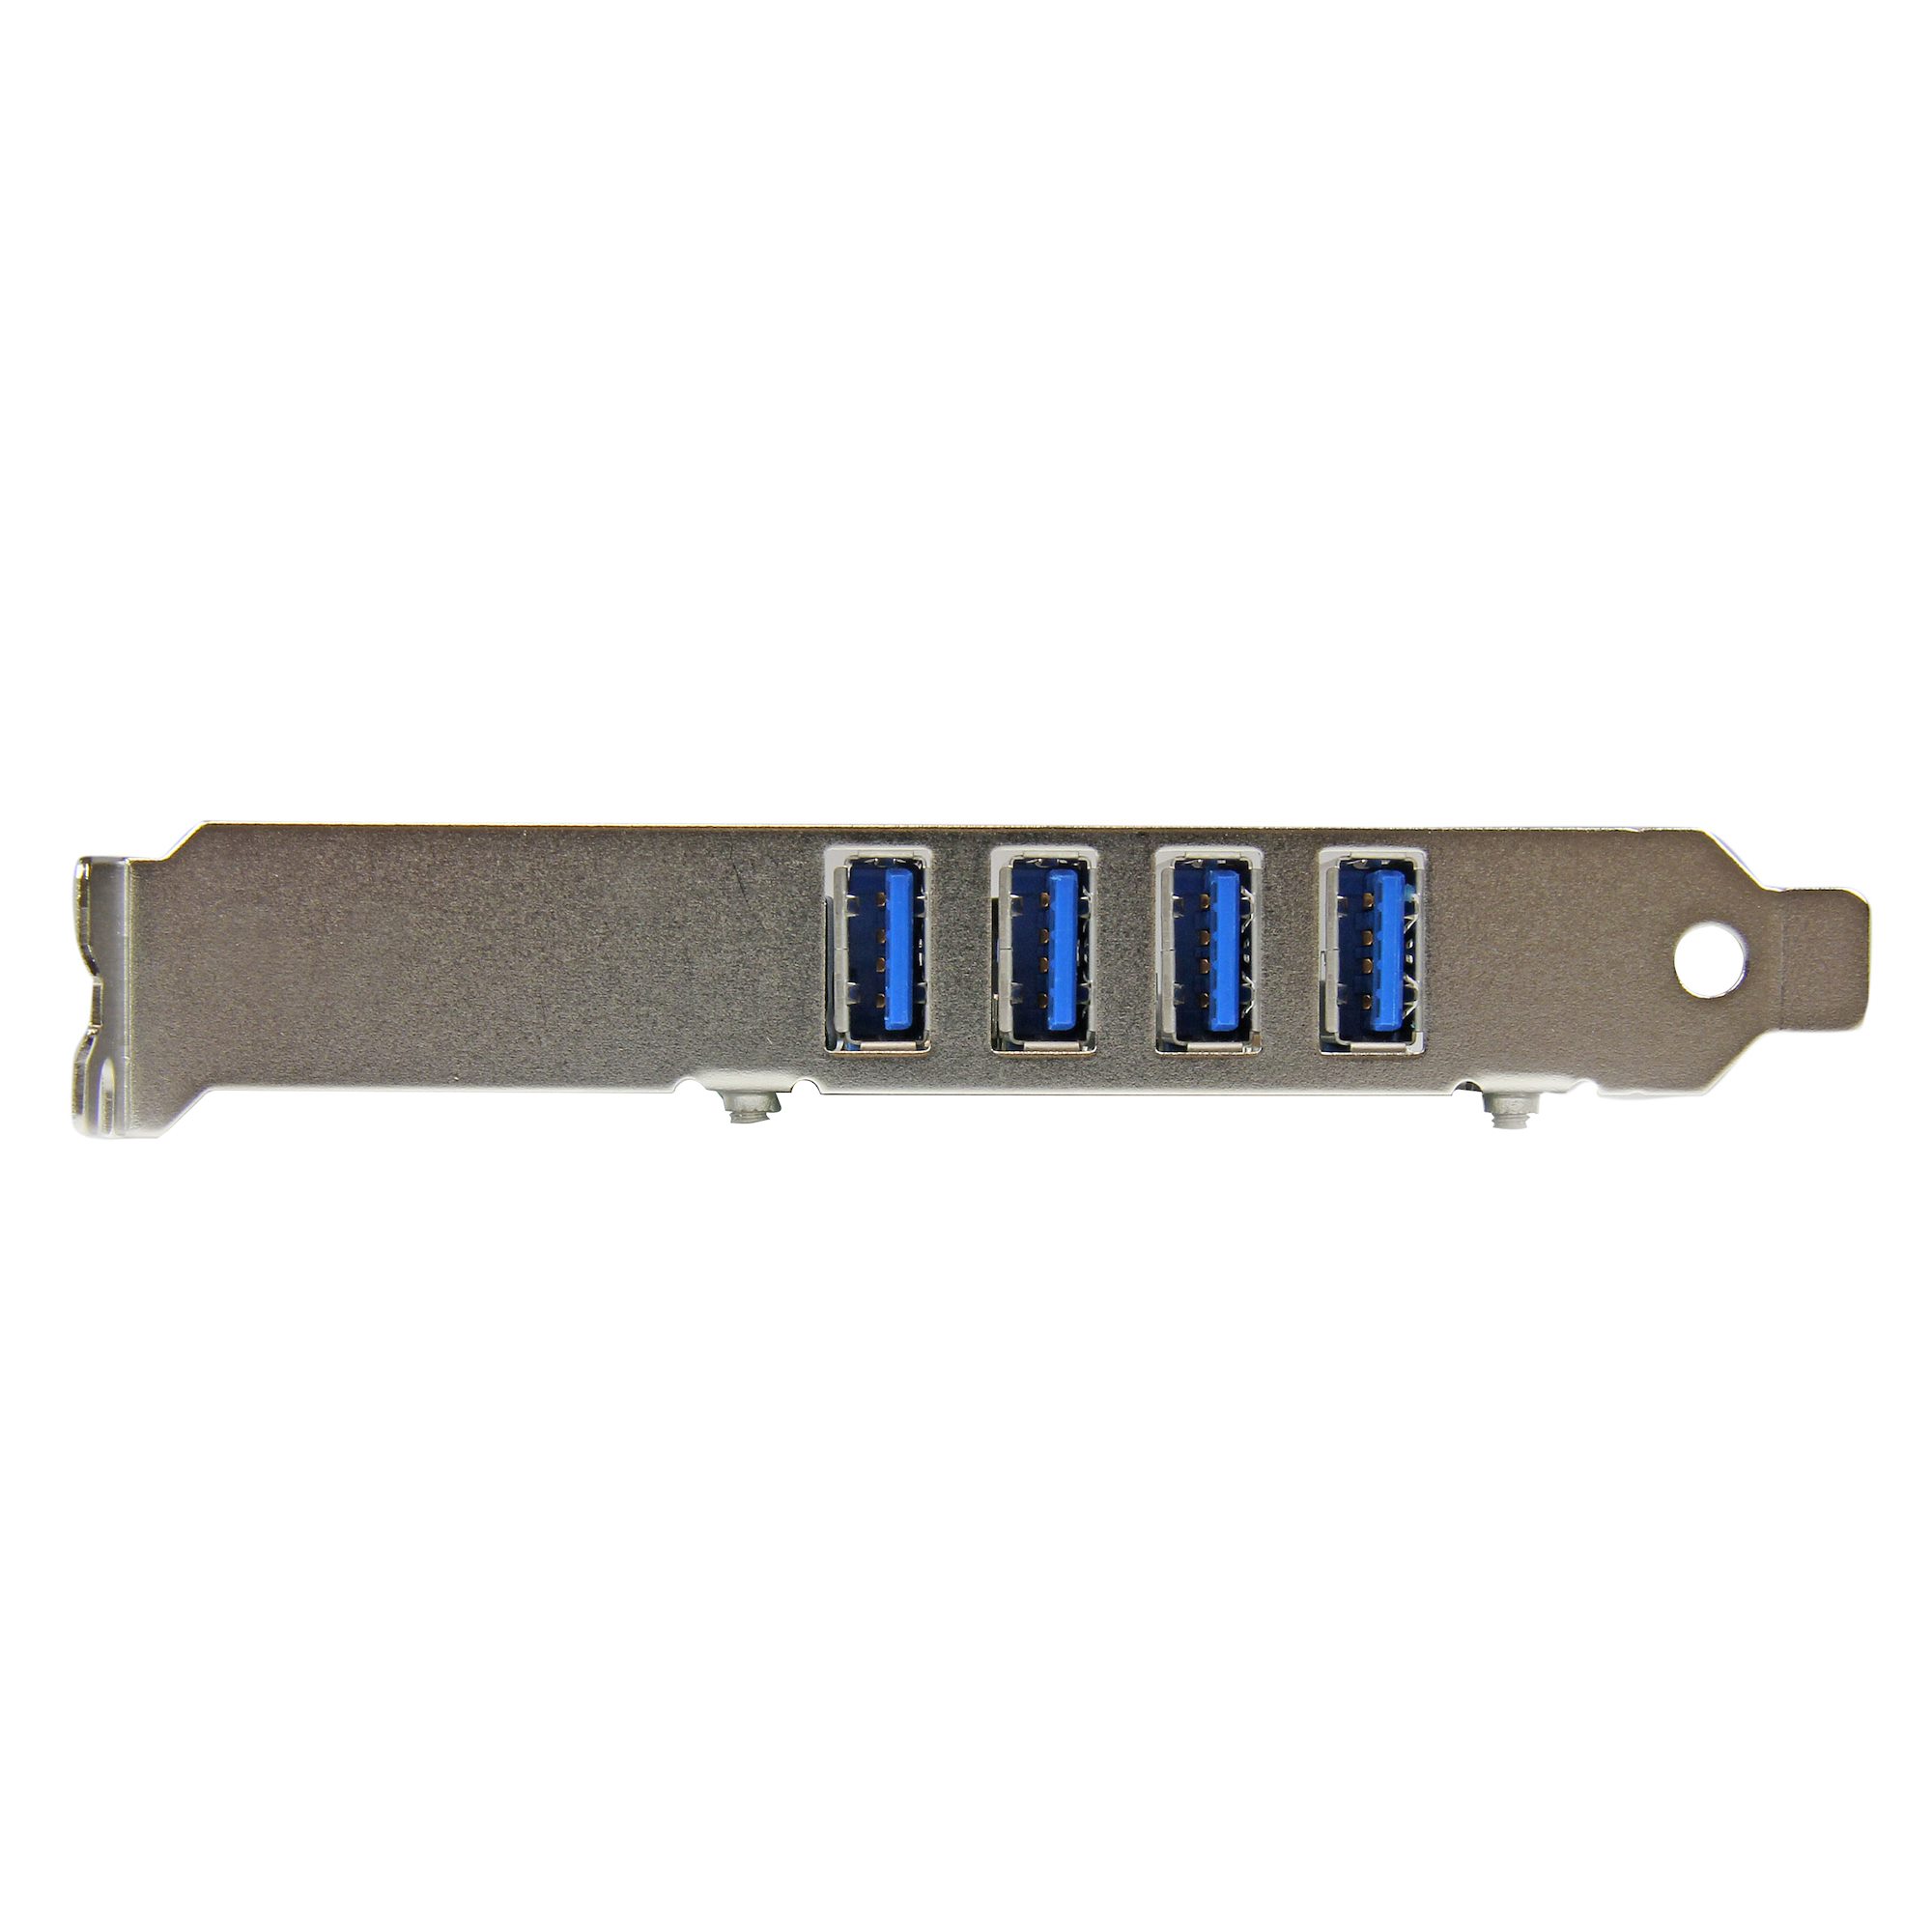 USB 3.0 4ポート増設PCI Expressインターフェースカード　4x USB 3.0 拡張用PCIe x1 接続ボード　SATA電源端子付き